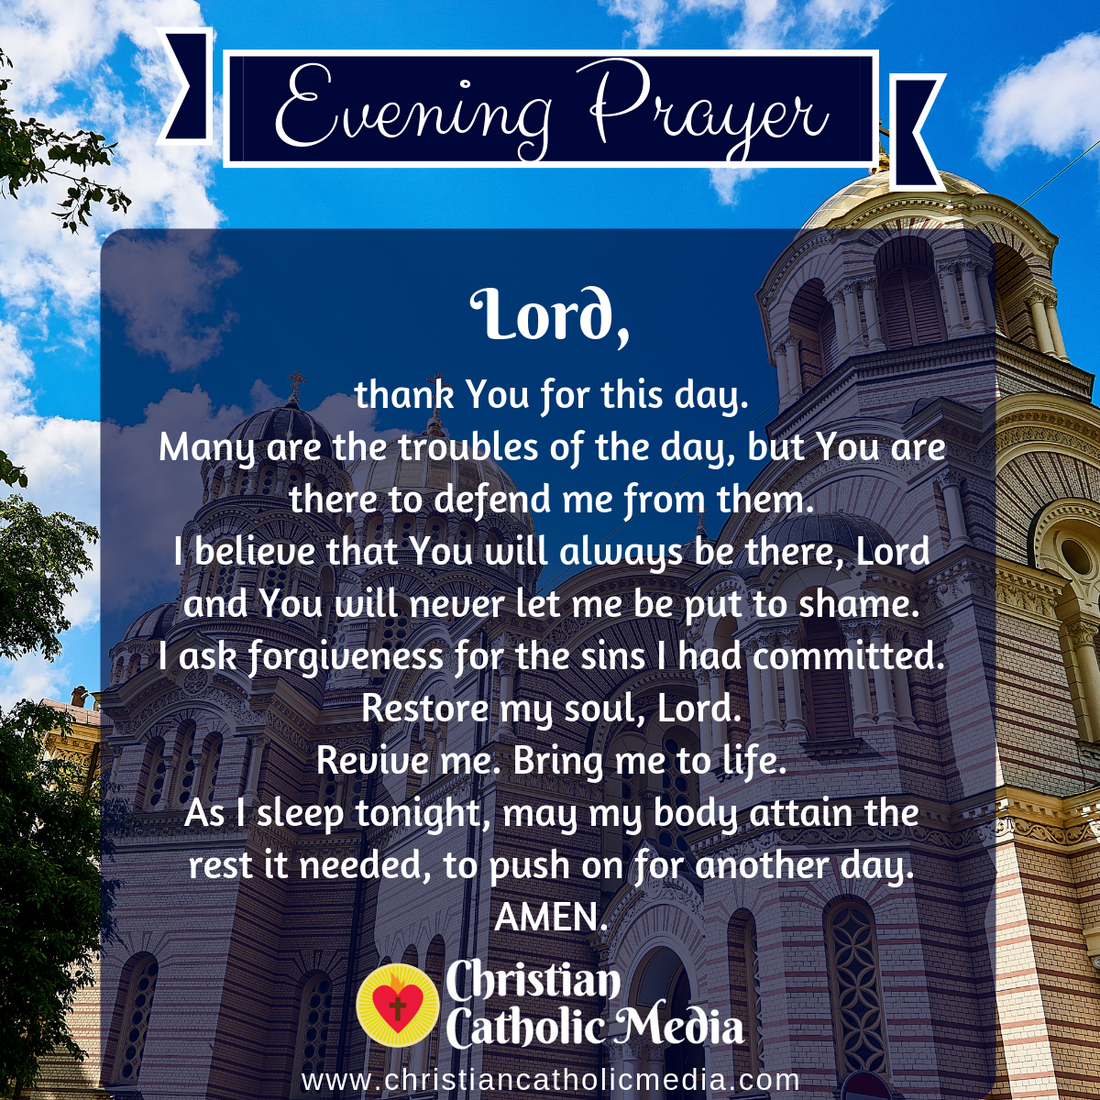 Evening Prayer Catholic Monday January 3, 2022